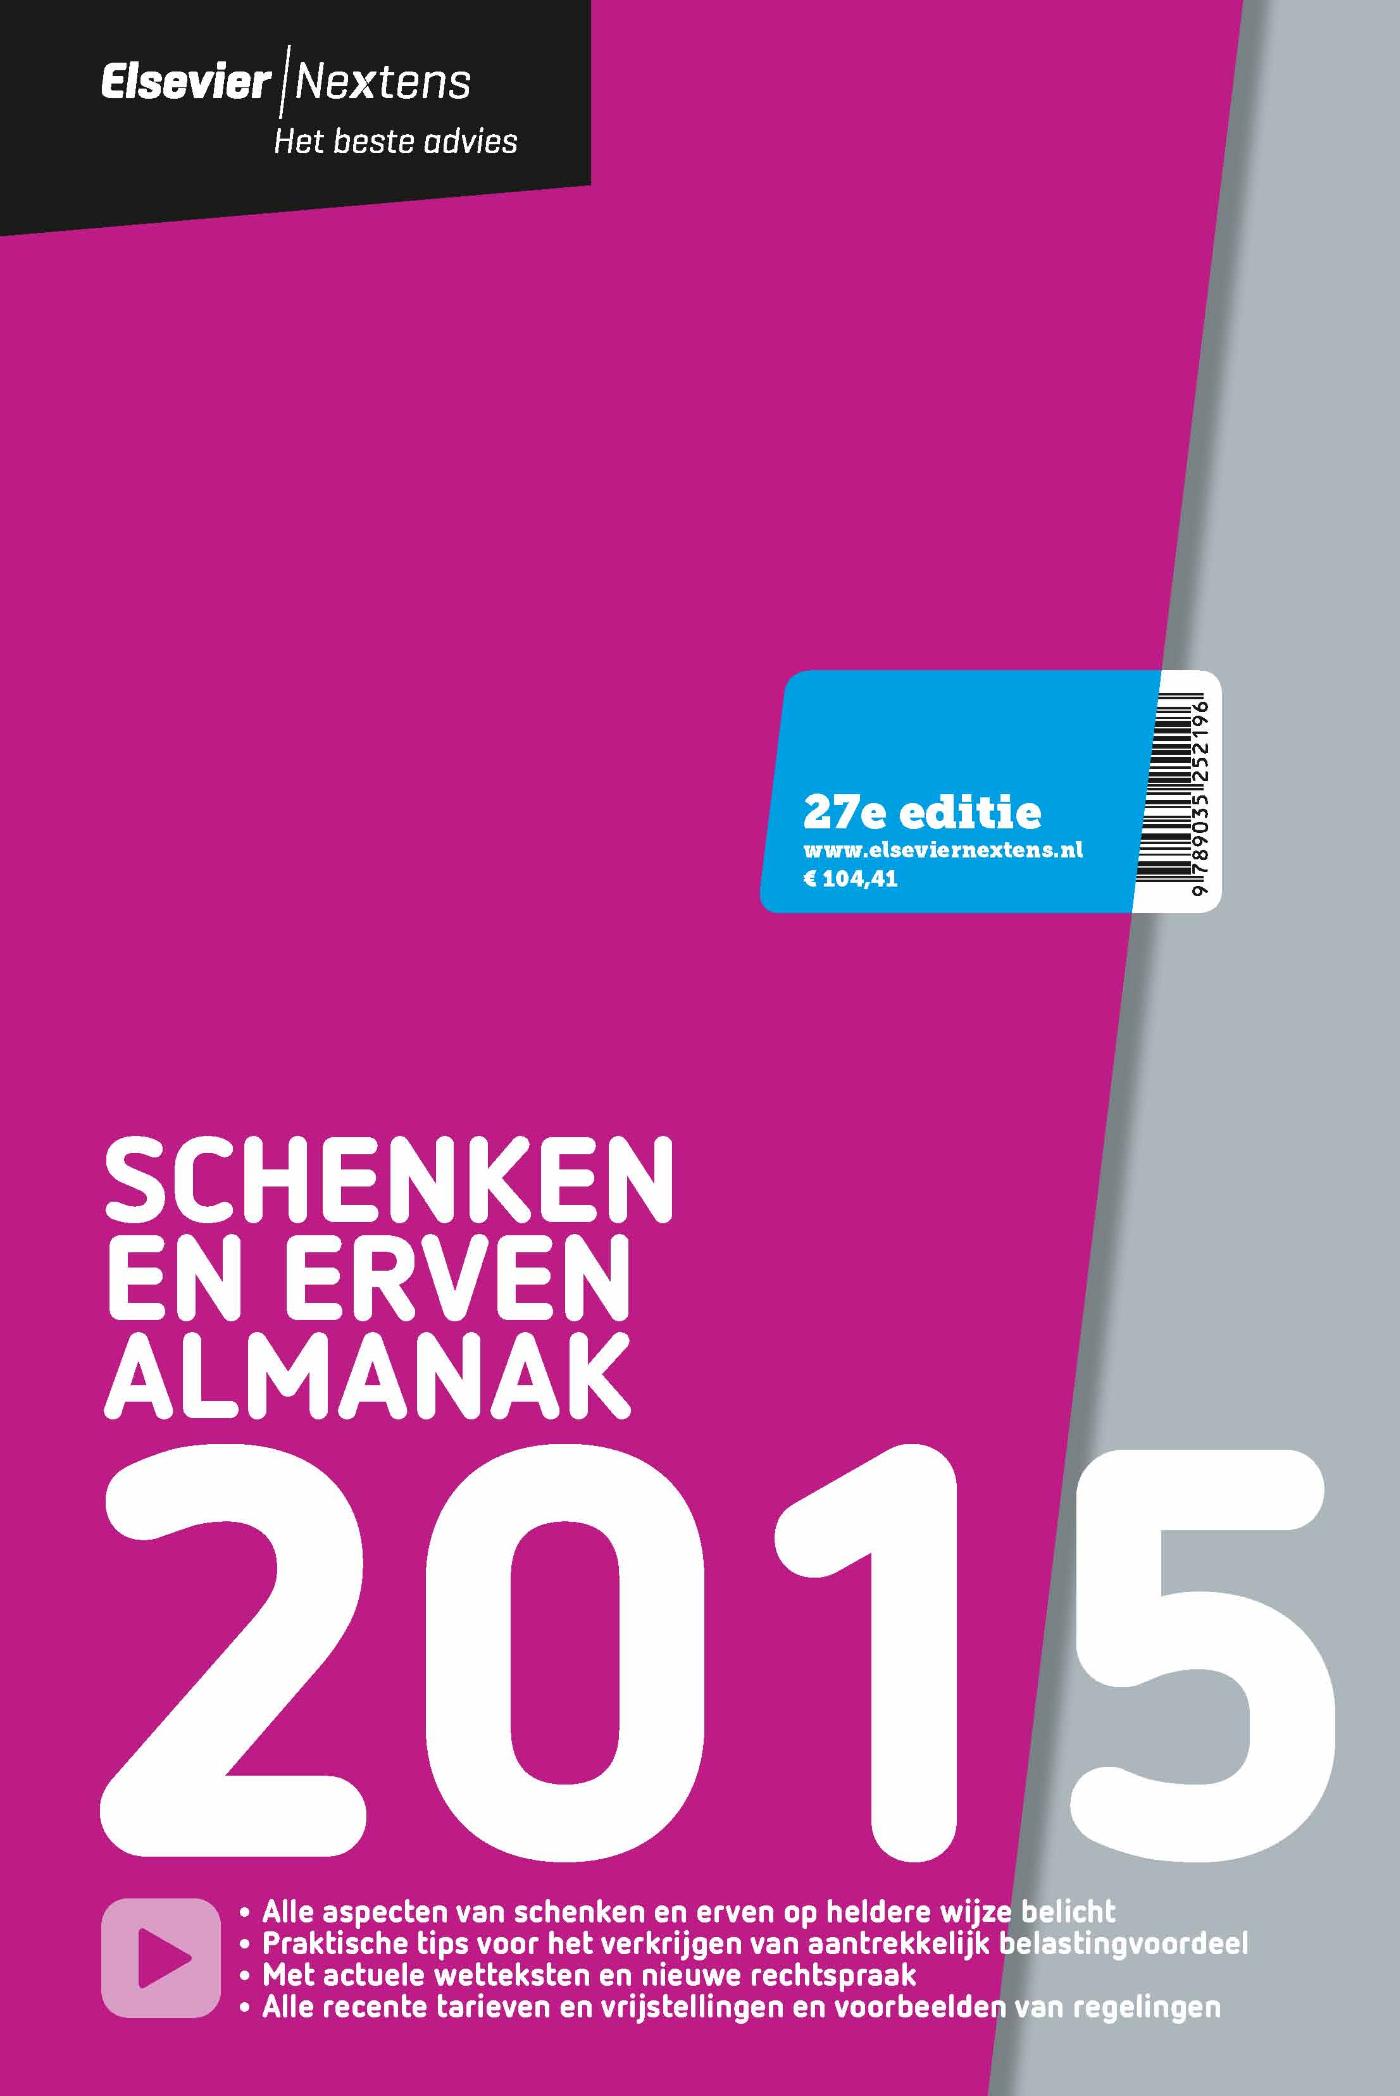 Elsevier schenken en erven almanak / 2015 (Ebook)